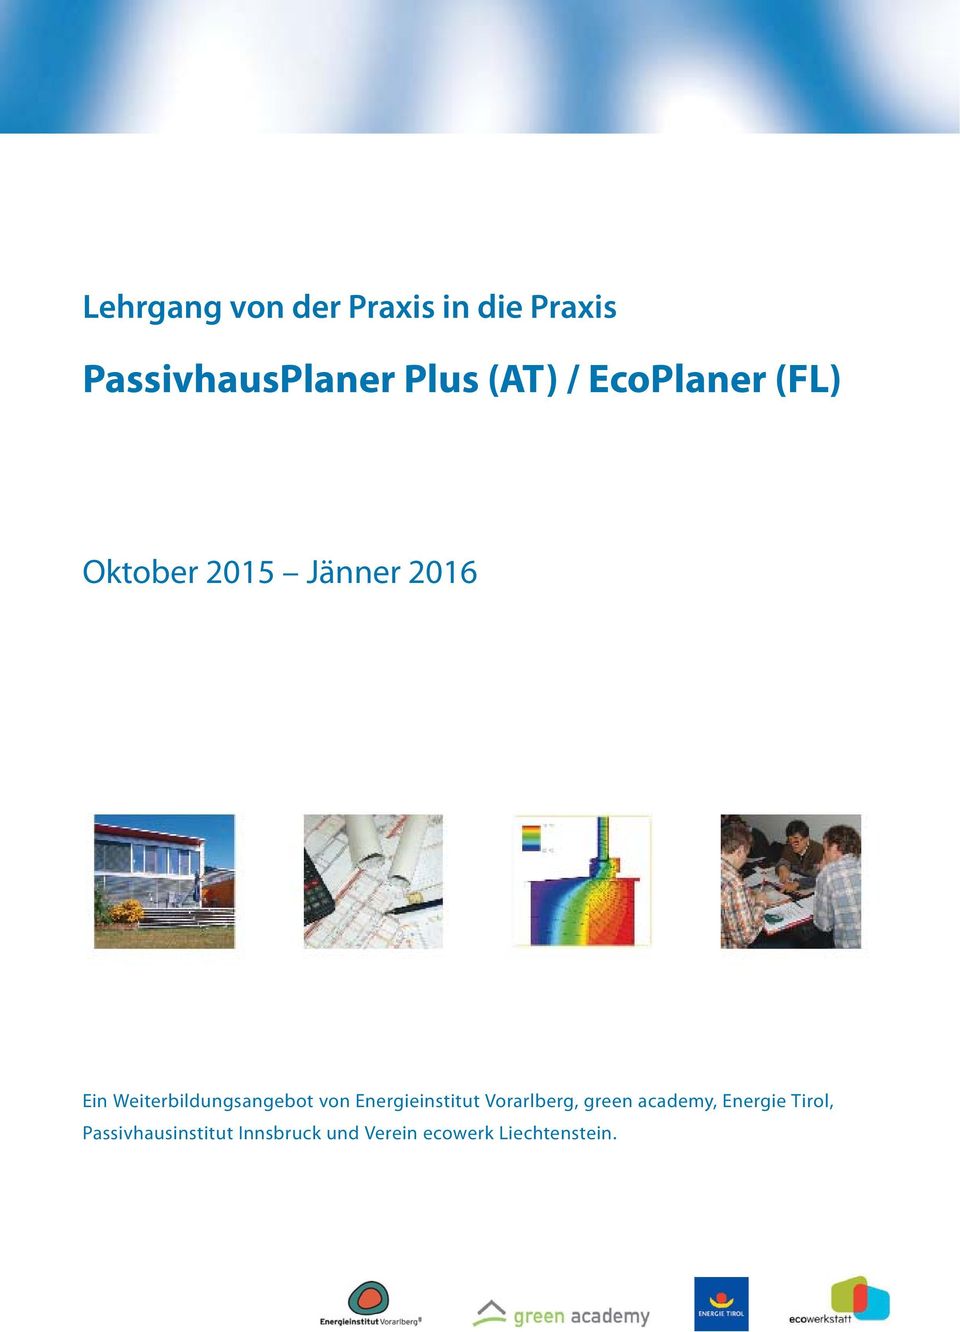 Weiterbildungsangebot von Energieinstitut Vorarlberg, green